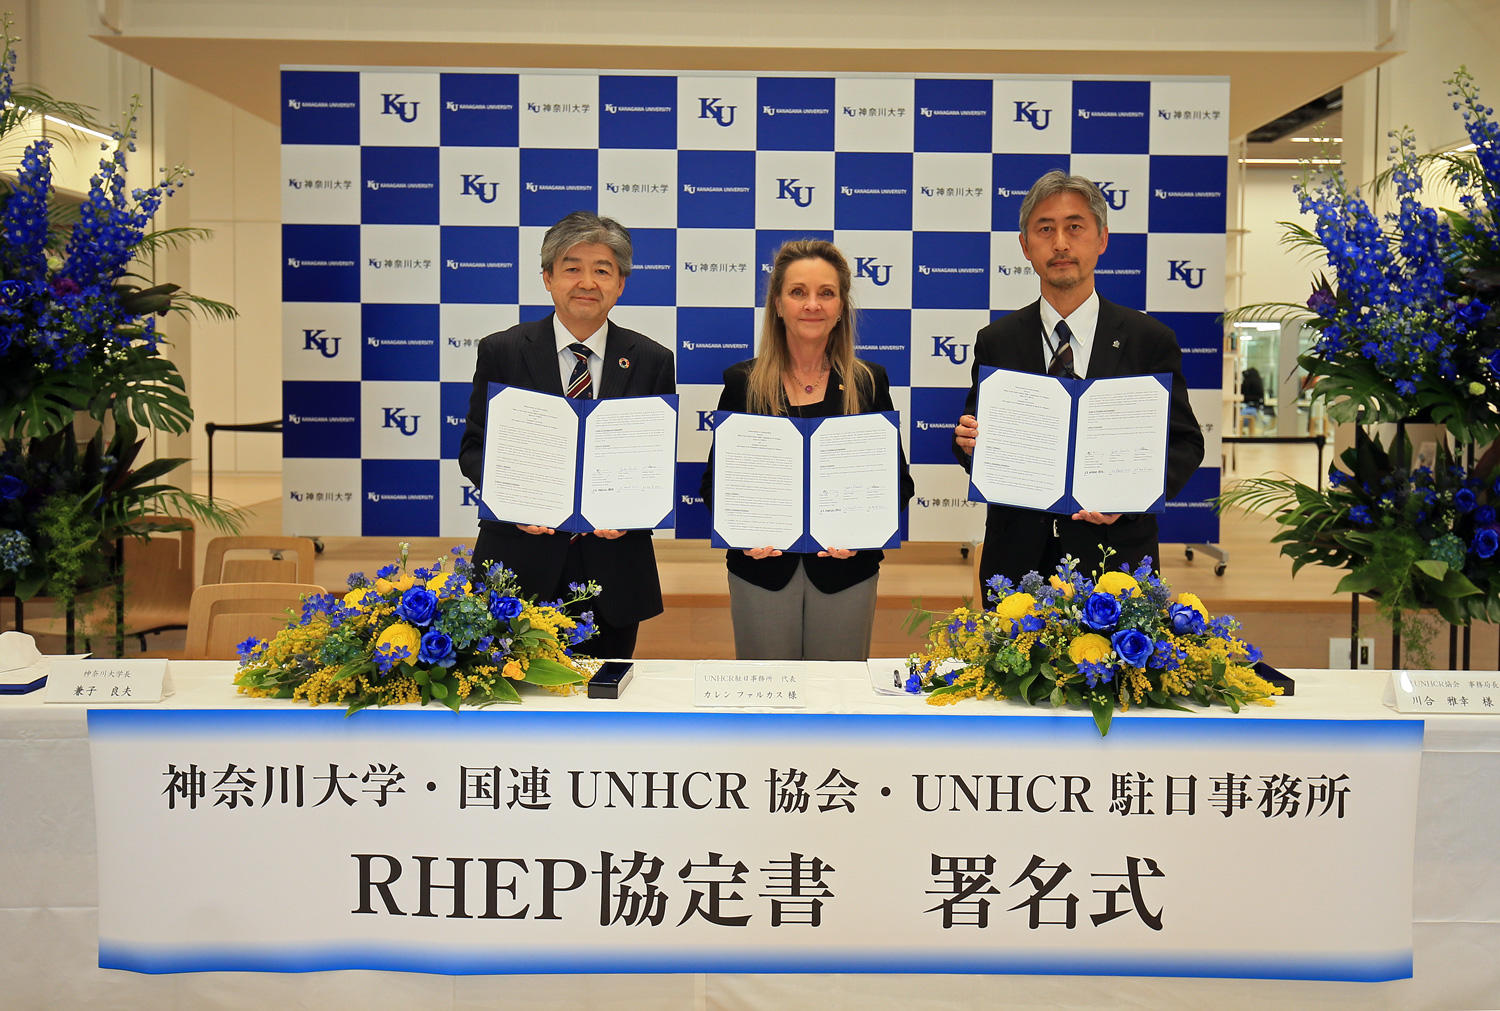 【神奈川大学】難民を対象とした推薦入学制度「UNHCR難民高等教育プログラム」の協定を締結しました